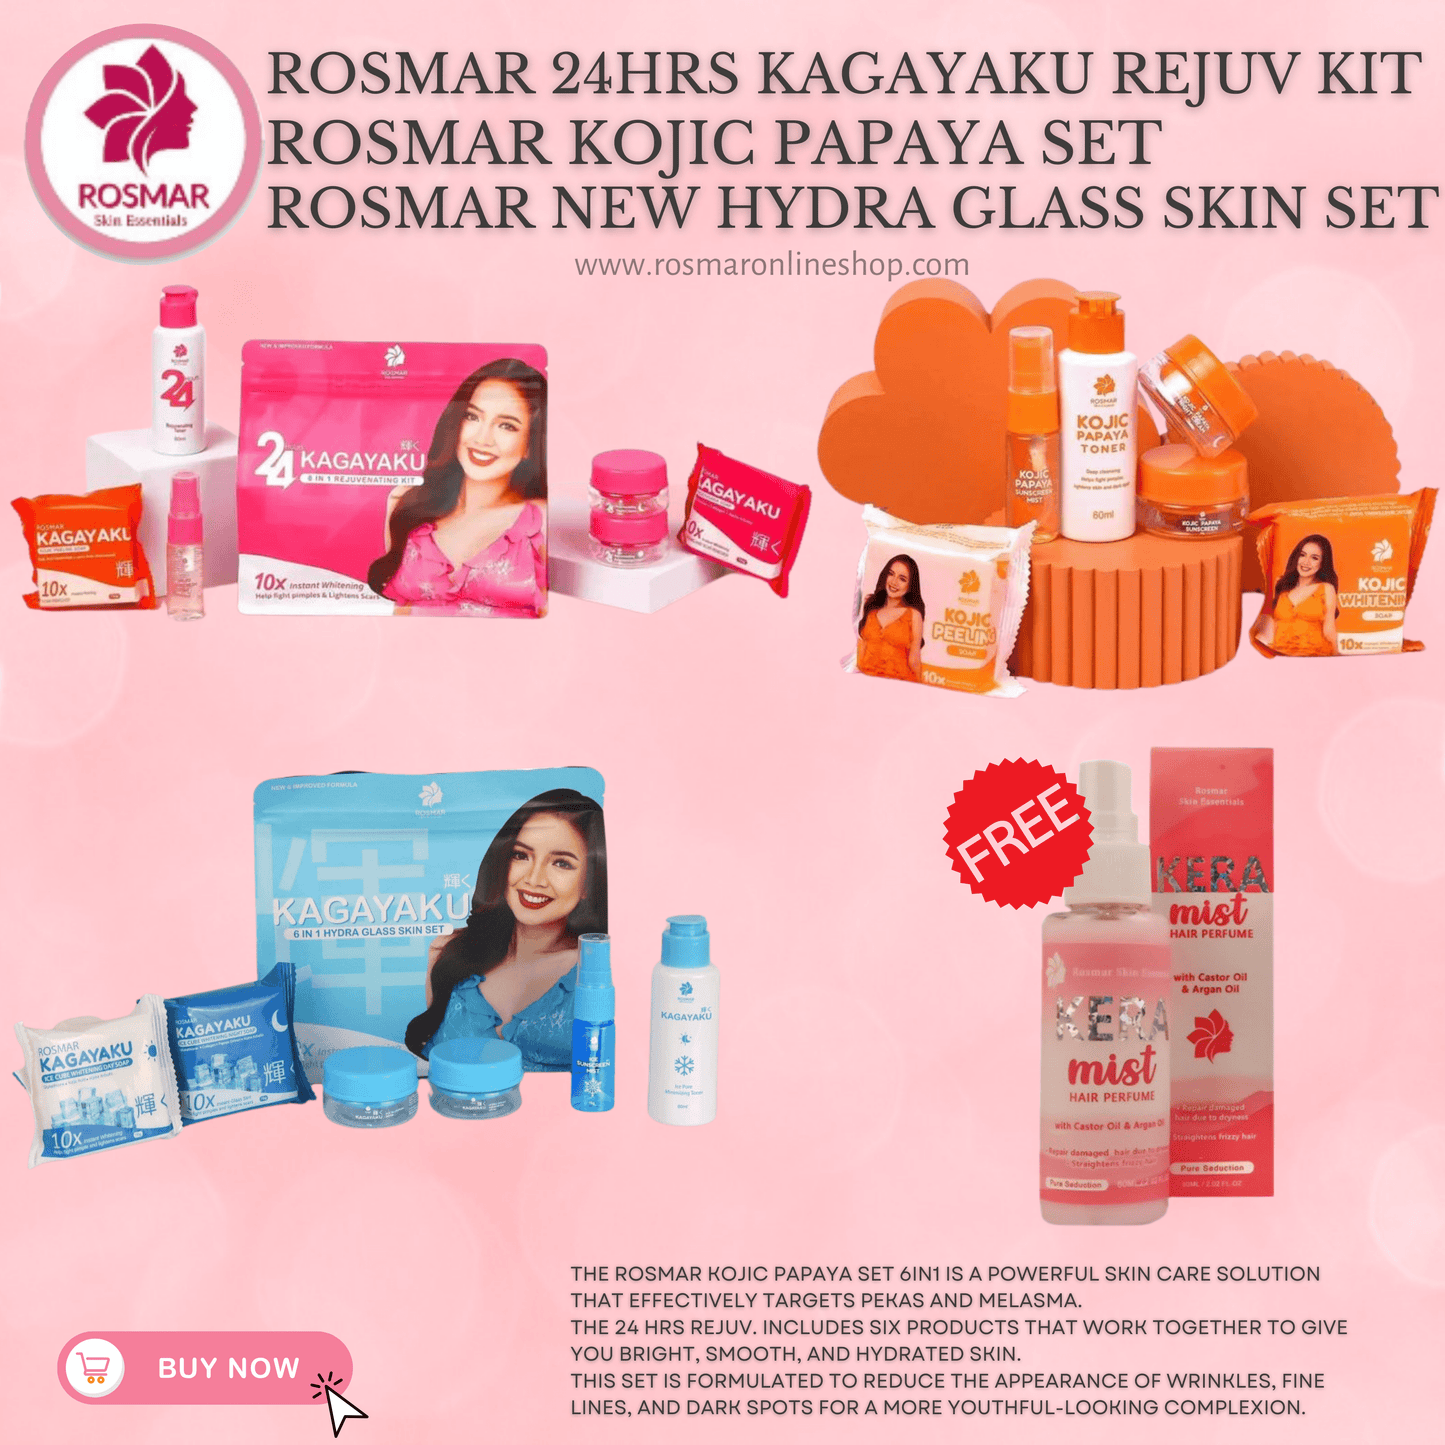 Rosmar REJUV - 24hrs Kagayaku Rejuvenating kit in 6in1 Pack Skincare Skin Repair Anti Aging Set Rosmar Online Shop 1 SET